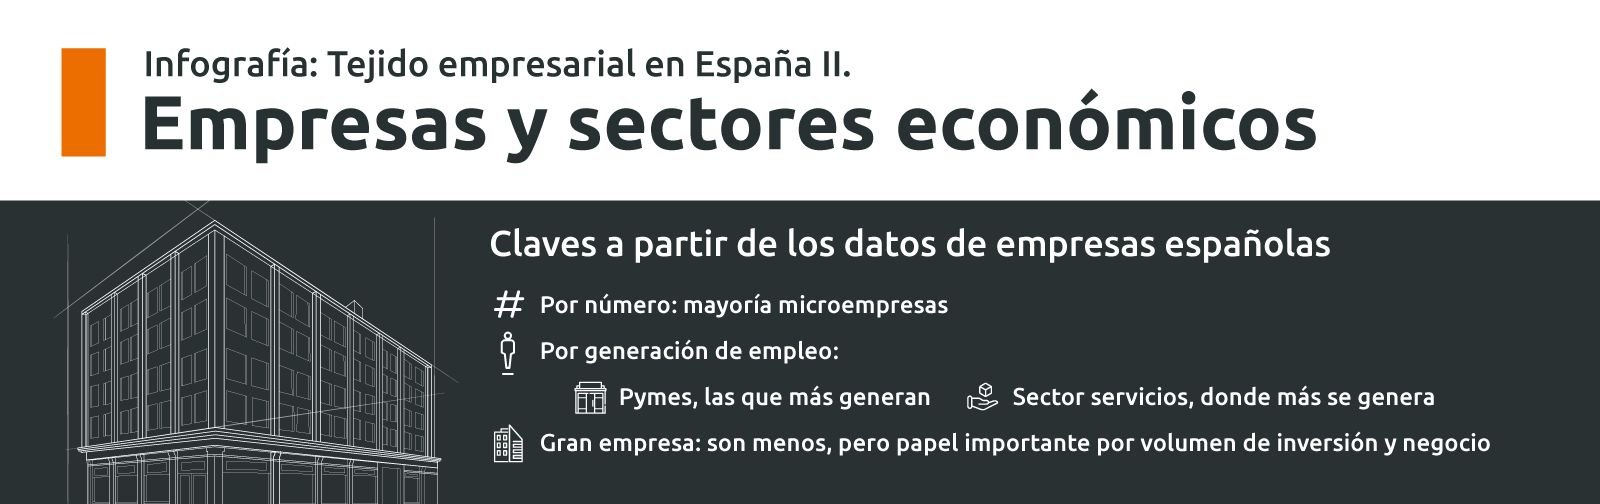 Tejido empresarial en España: Empresas y sectores